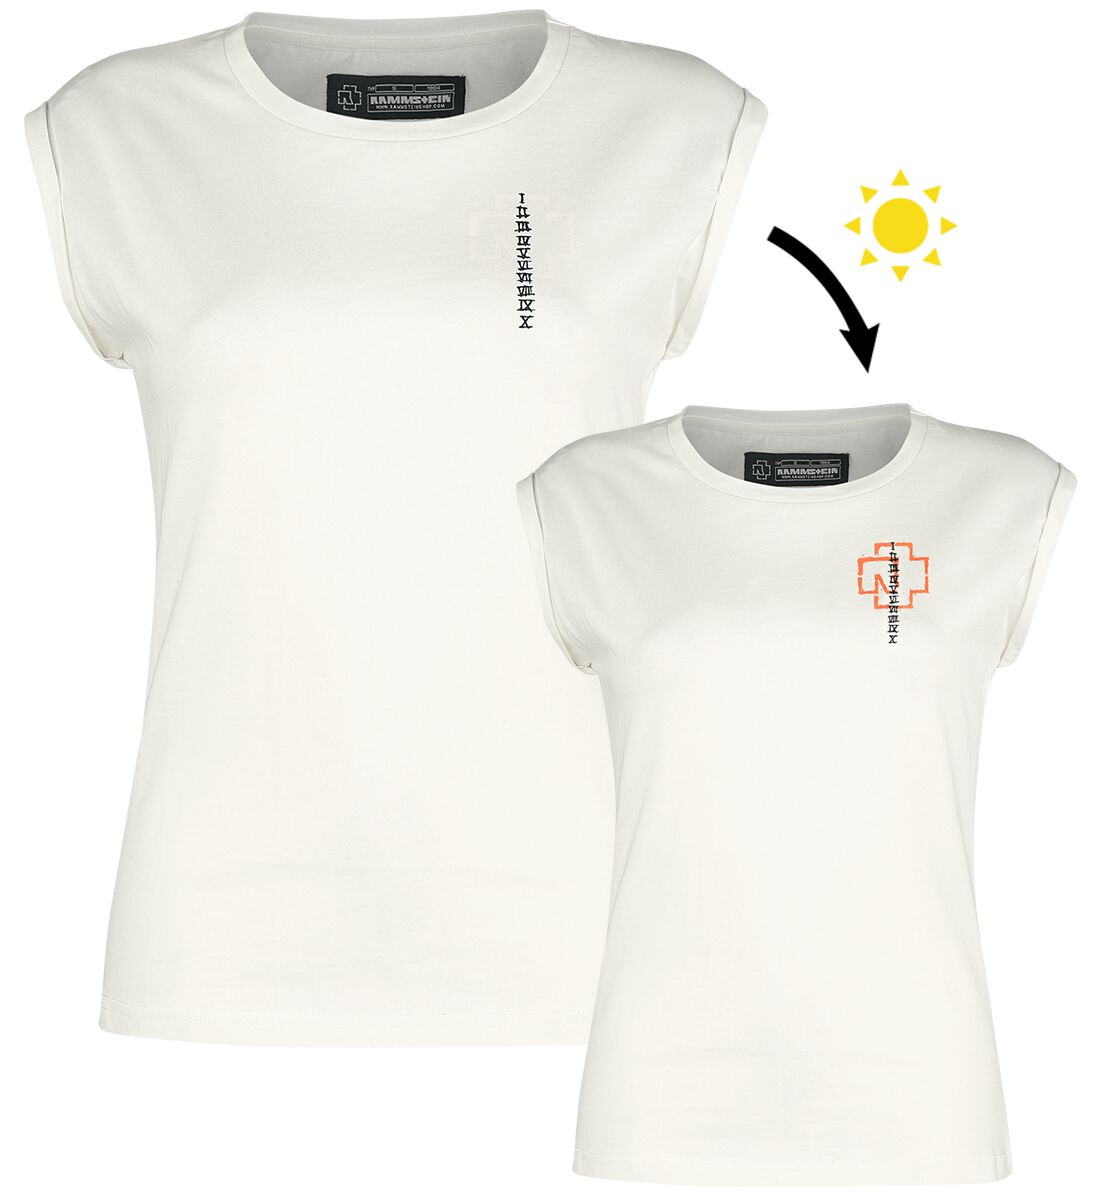 T-Shirt Manches courtes de Rammstein - Sonne - XL à XXL - pour Femme - blanc